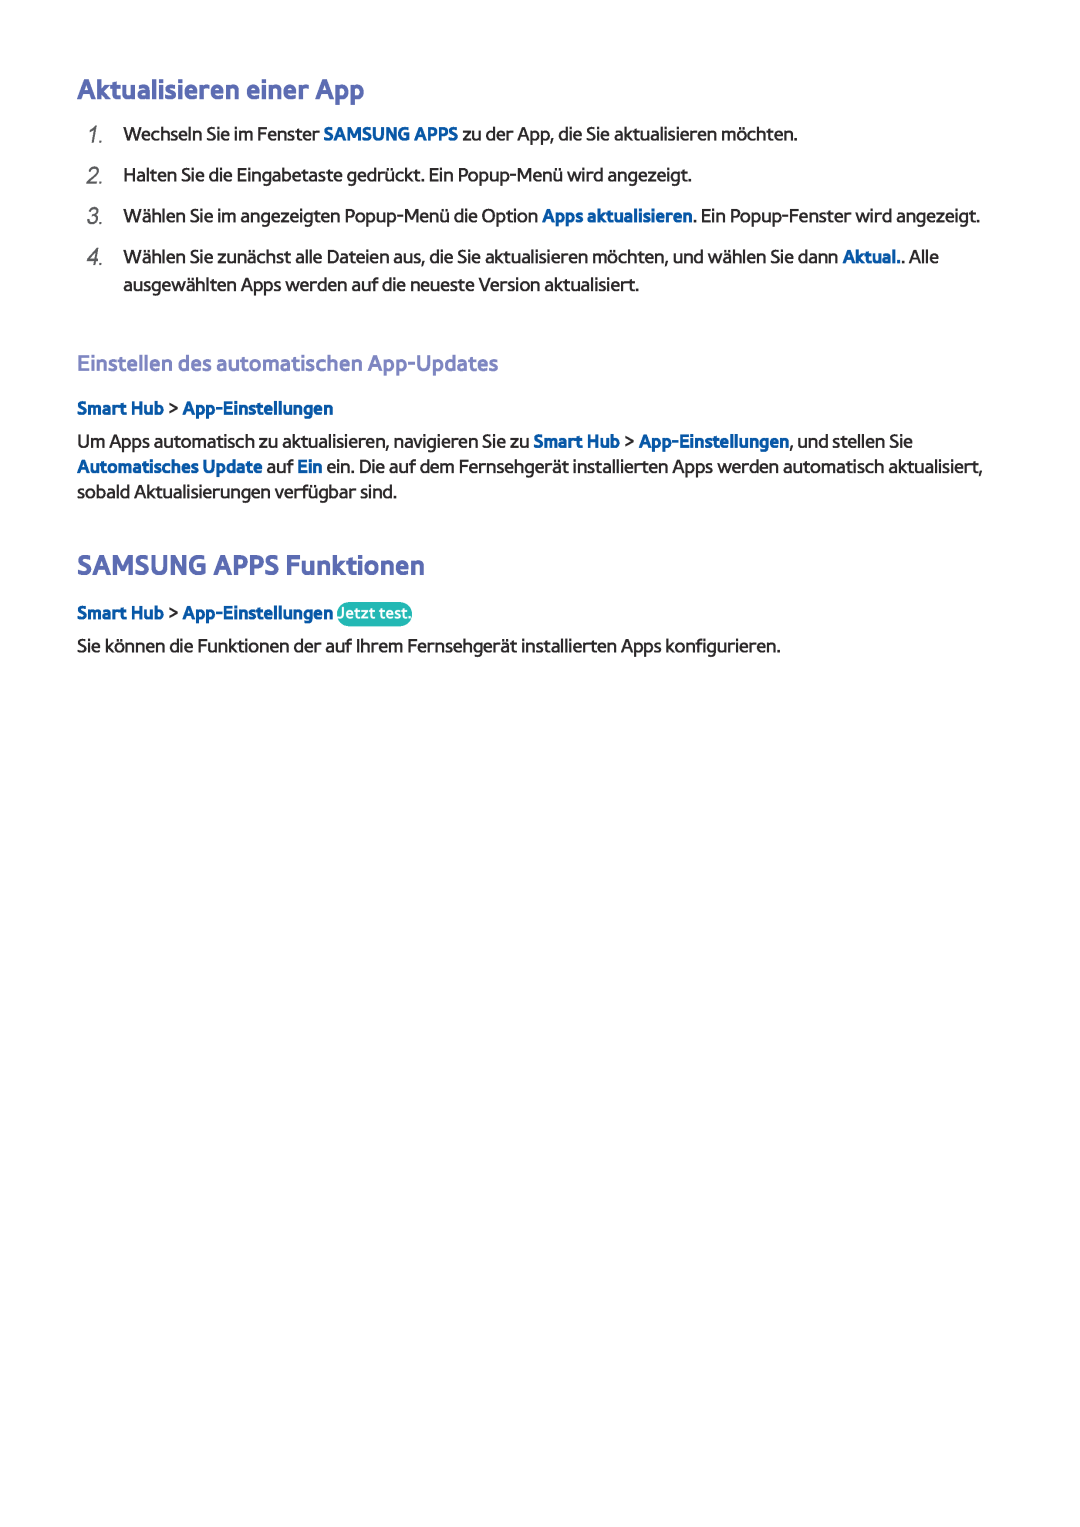 Samsung UE40J5250SSXZG manual Aktualisieren einer App, SAMSUNG APPS Funktionen, Einstellen des automatischen App-Updates 